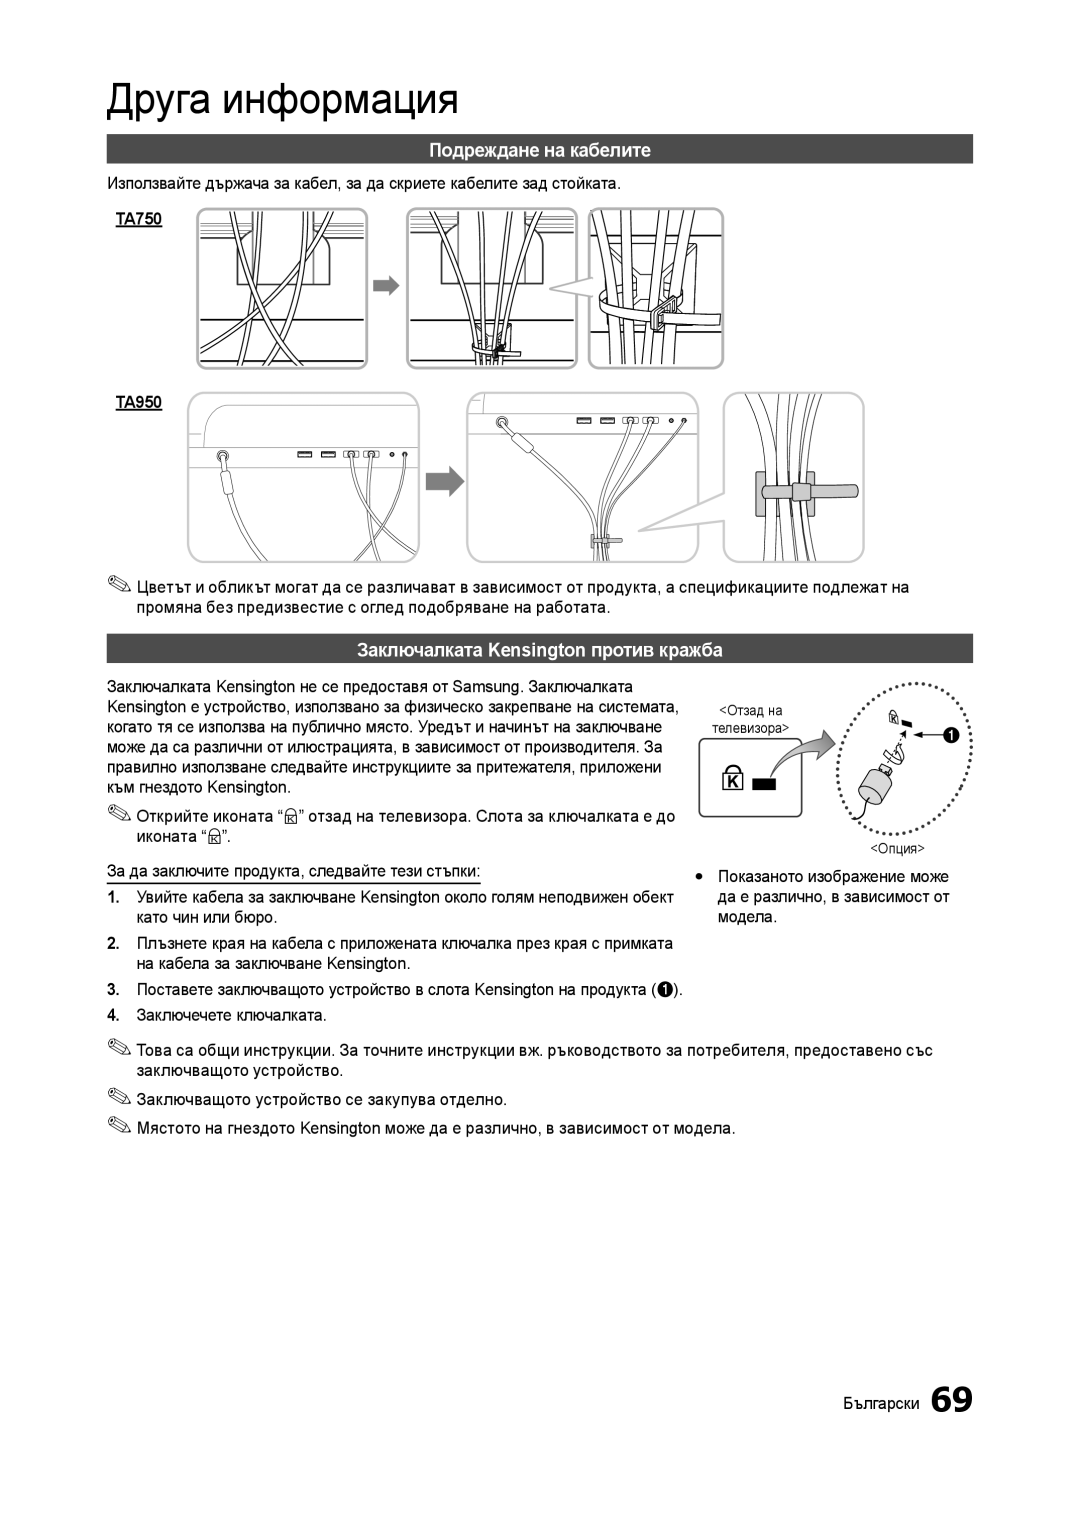 Samsung LT23A750EX/EN manual Подреждане на кабелите, Заключалката Kensington против кражба, Друга информация, TA750 TA950 